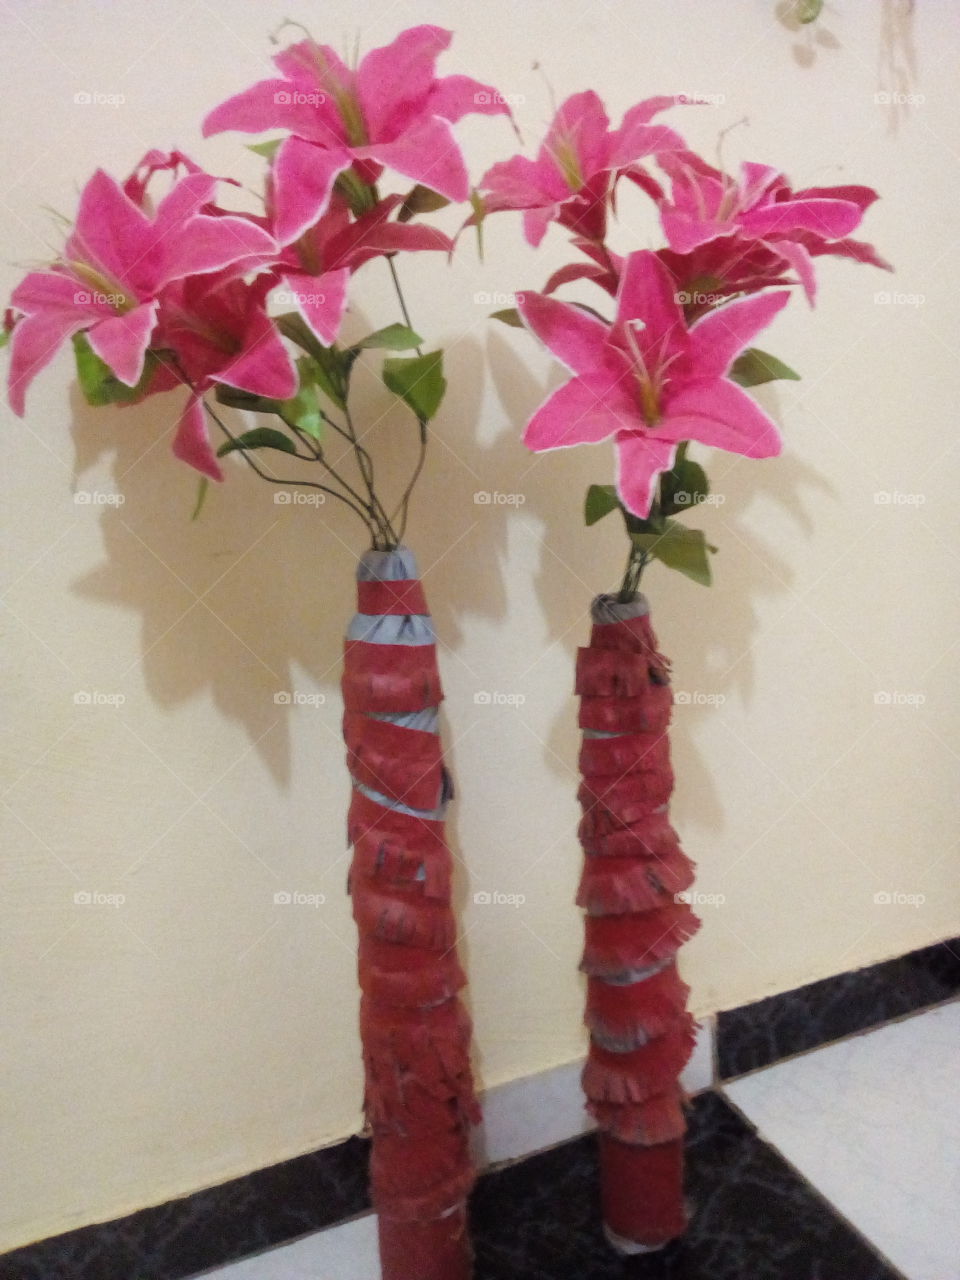 Artesanato, decorativo com garrafas de azeite e flores artificiais